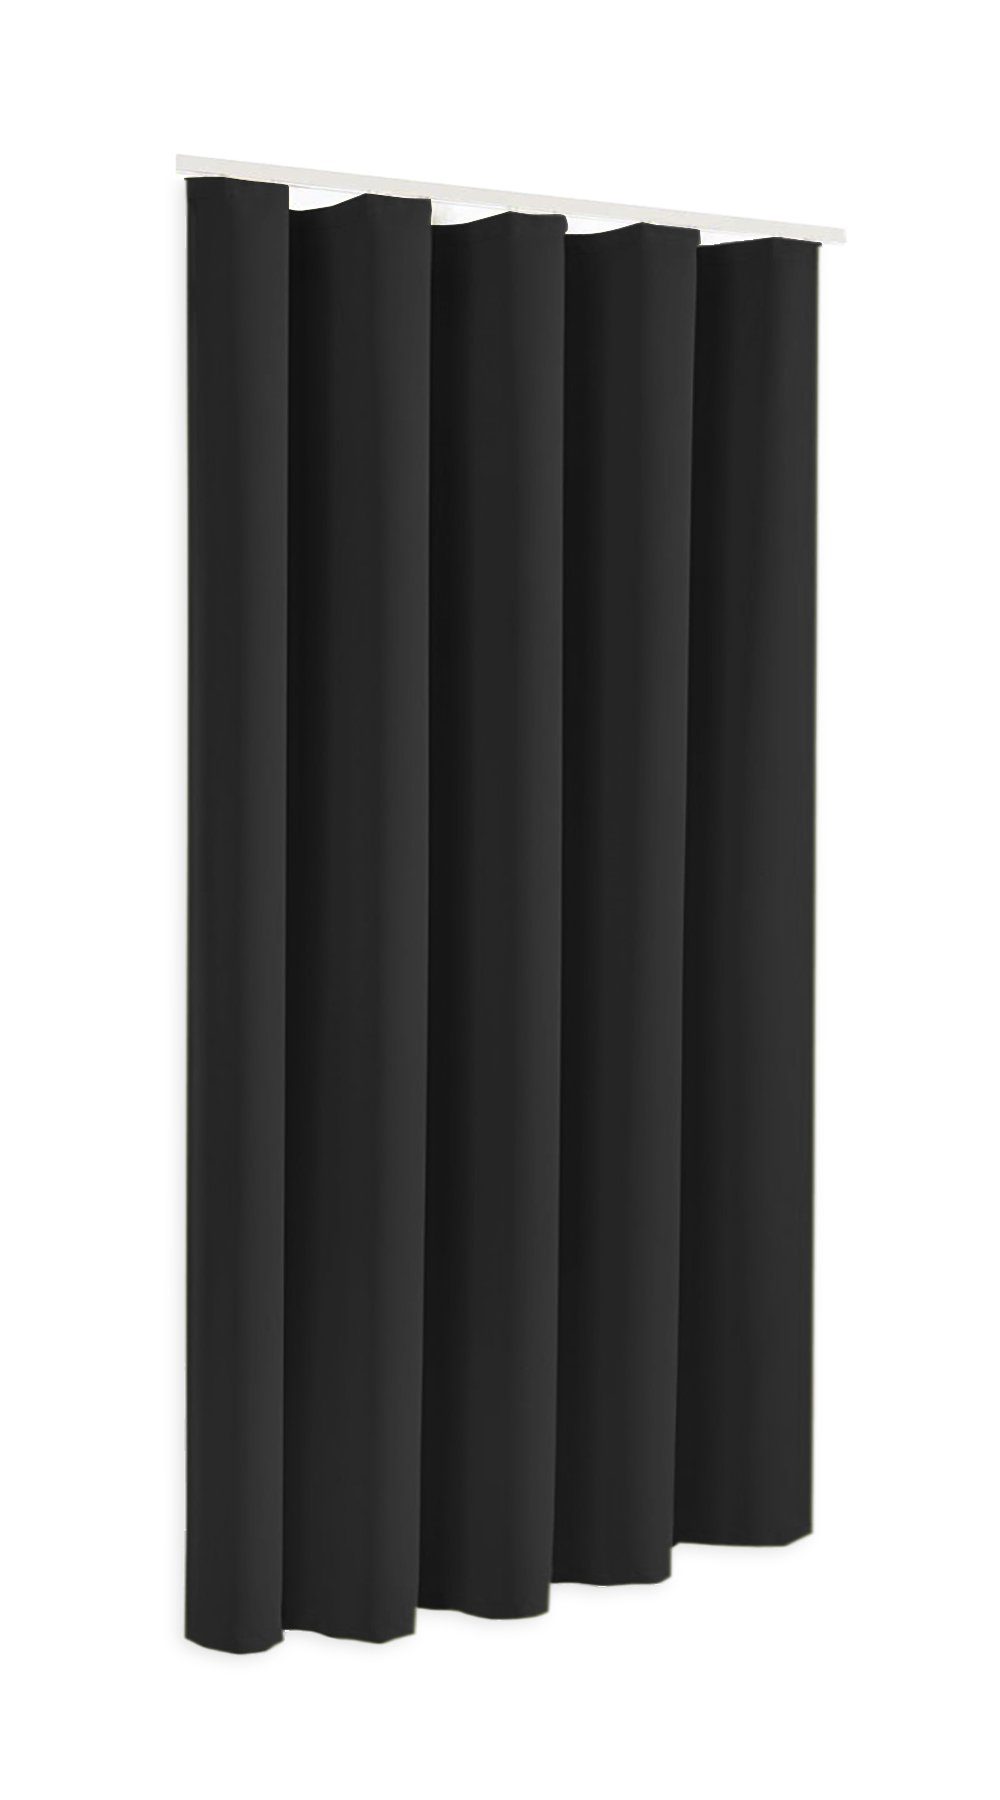 Verdunkelungsvorhang Blackout Verdunkelungsschal in Höhe Sopran, blickdicht, 175cm Farbe schwarz, Clever-Kauf-24 245cm, Thermovorhang, Modell oder